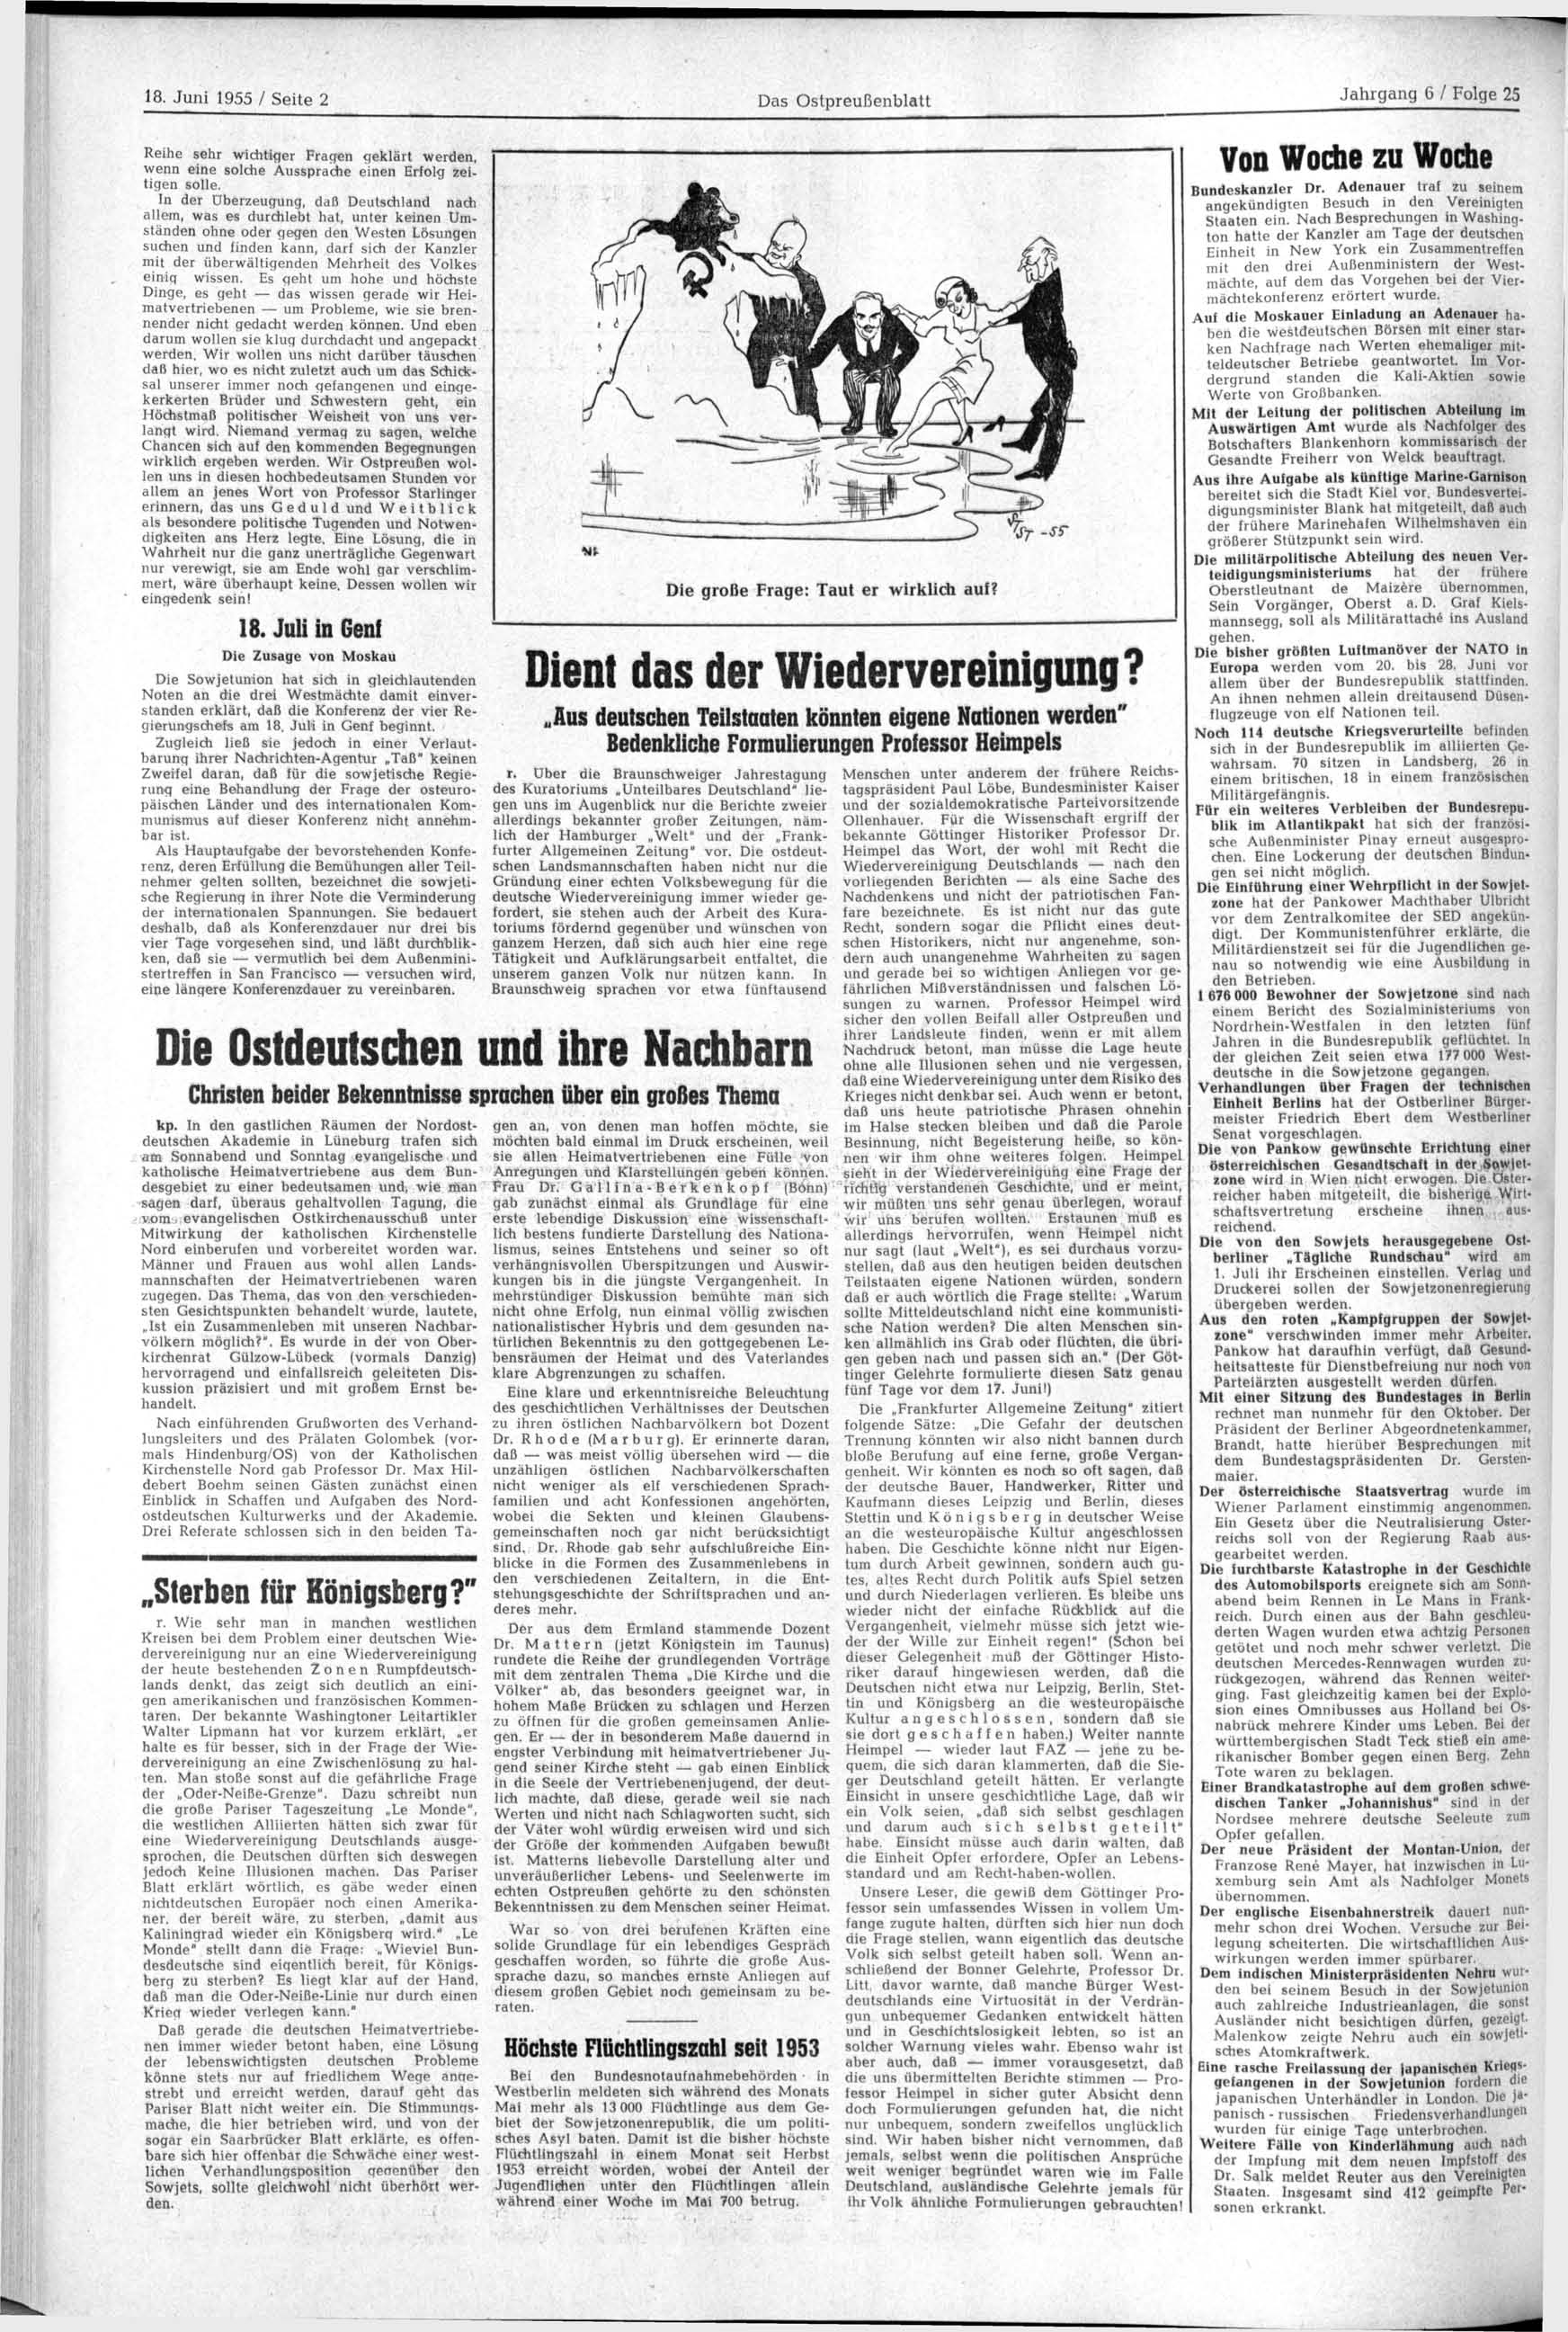 18. Juni 1955 / Seite 2 Das Ostpreußenblatt Reihe sehr wichtiger Fragen geklärt werden, wenn eine solche Aussprache einen Erfolg zeitigen solle.